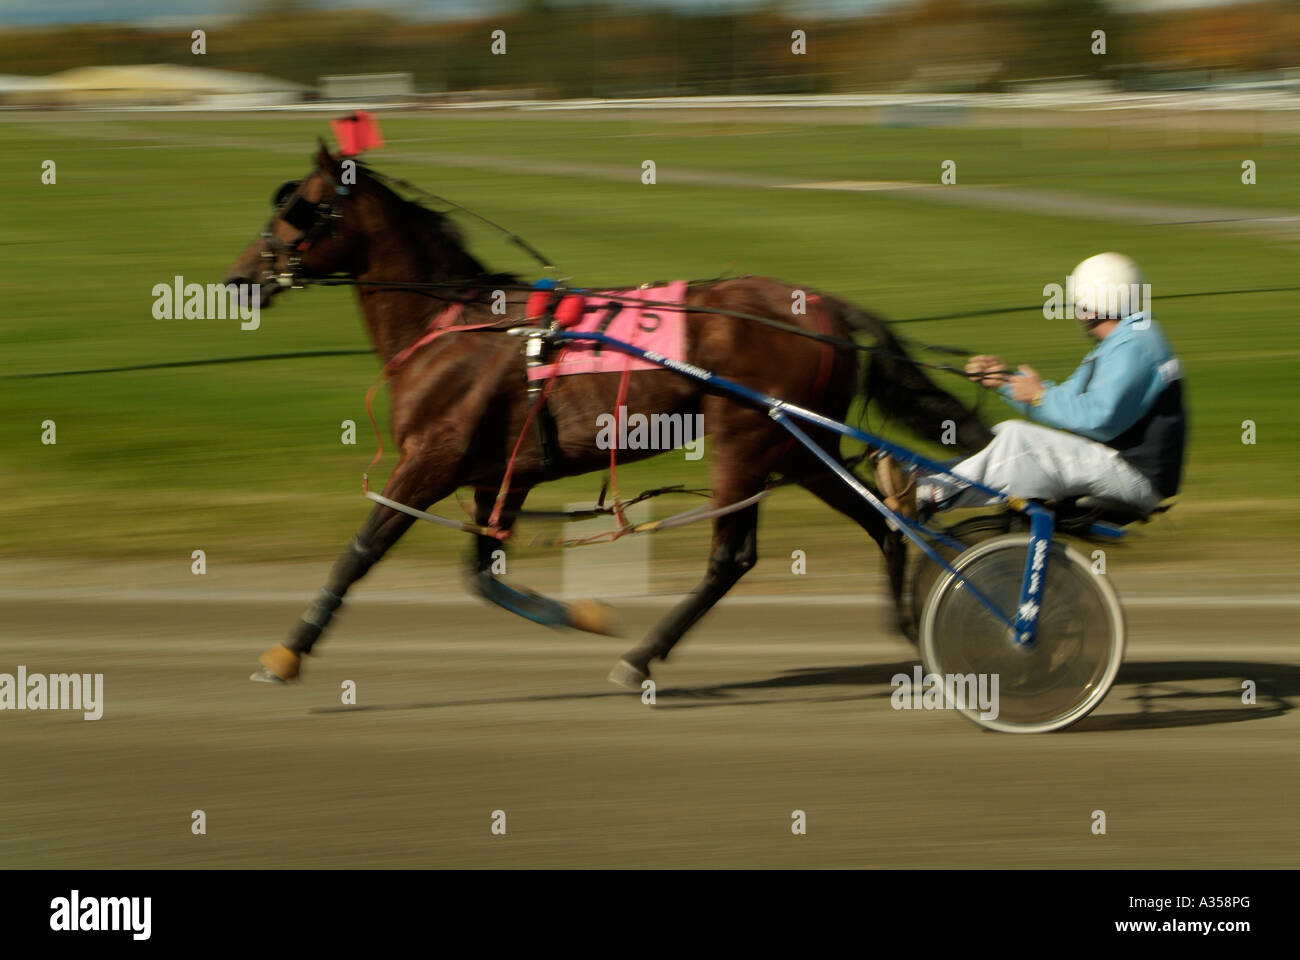 Un caballo de carreras tirando de un jockey y sulkie alrededor de una pista de carreras. Foto de stock